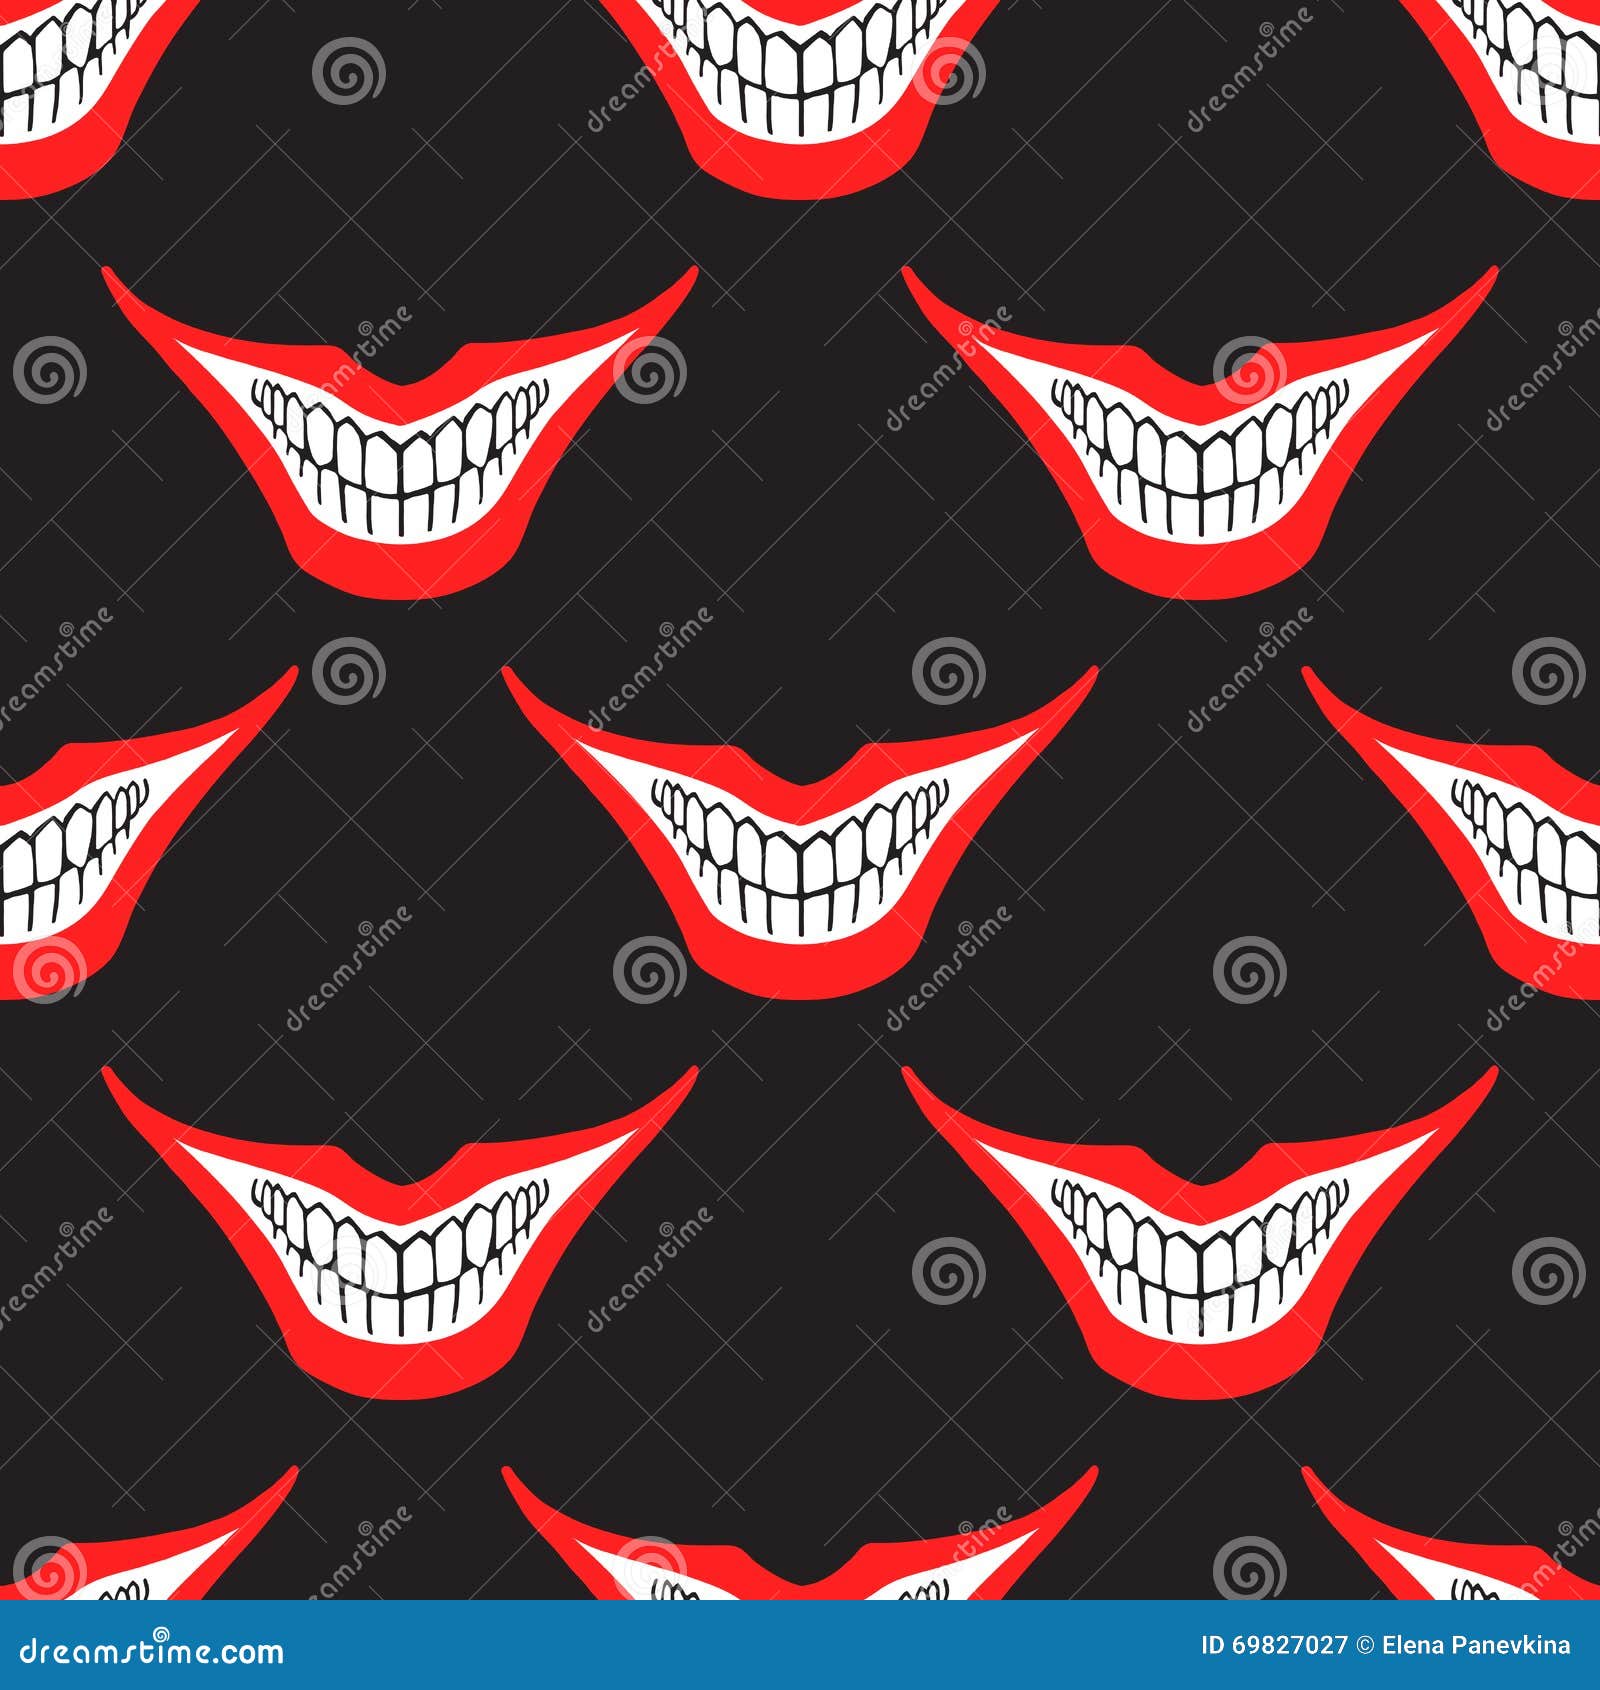 evil clown or card joker smile seamless pattern